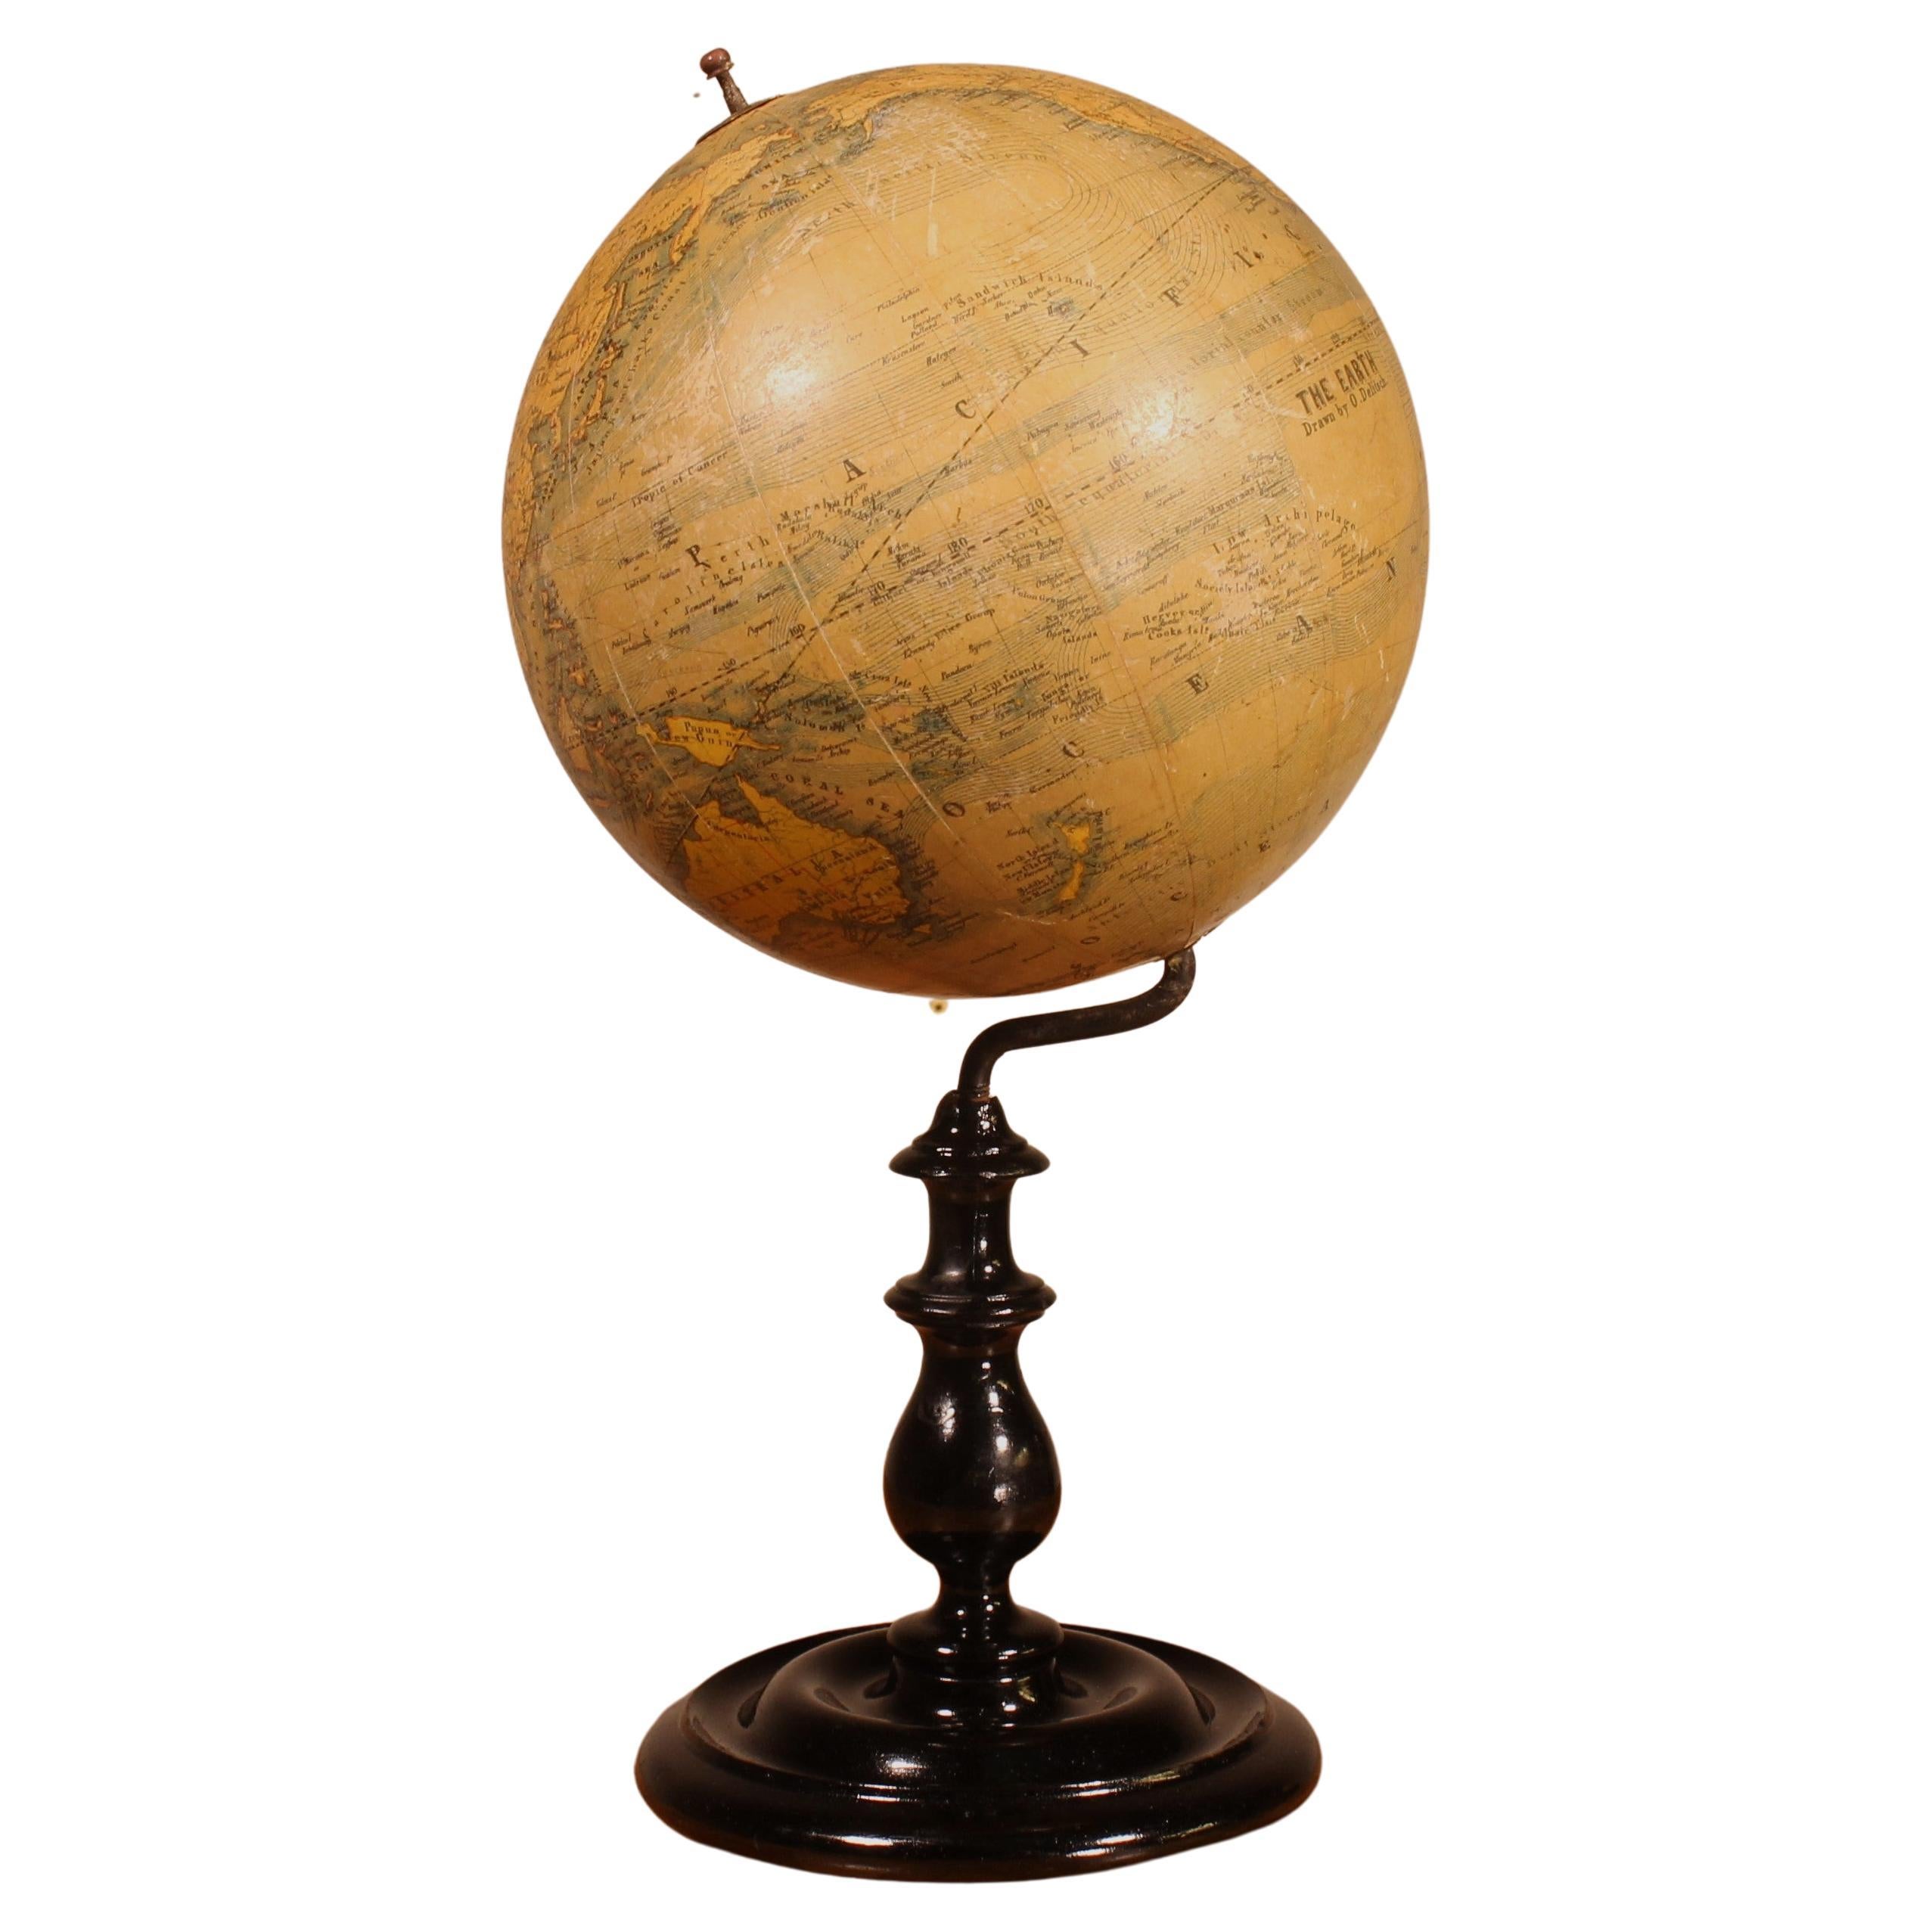 Terrestrial Globe by J Felkl, circa 1880, the Earth